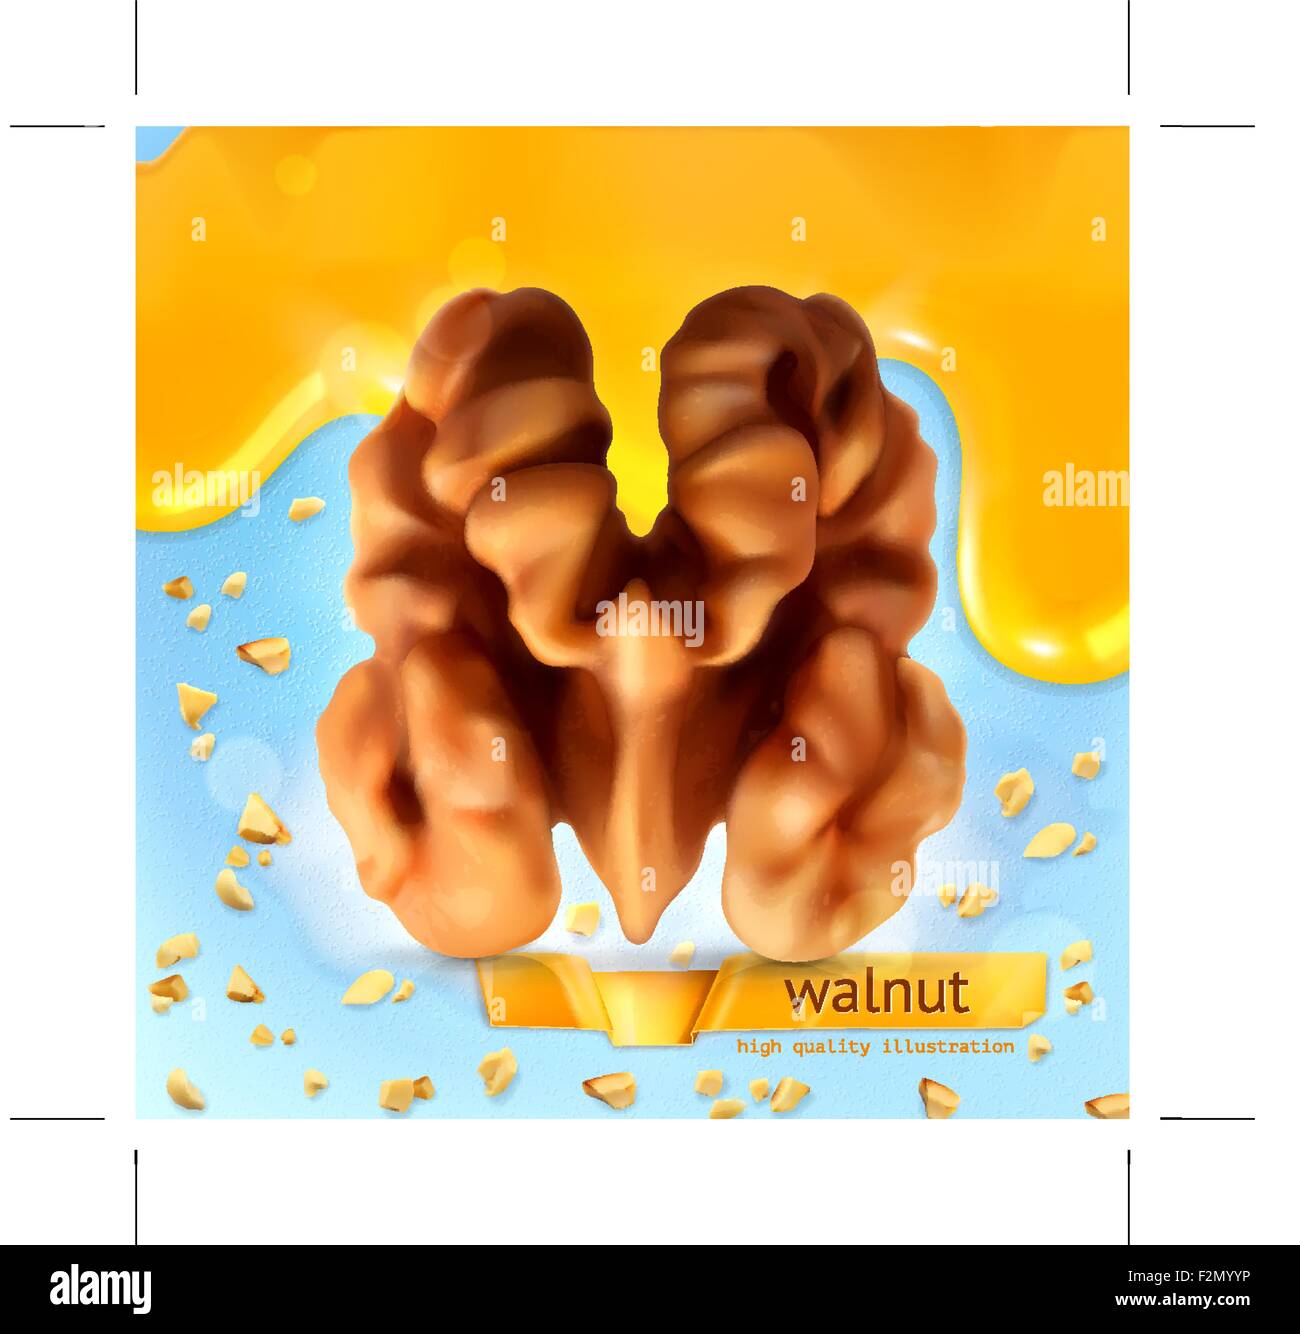 Walnut, vector background Stock Vector